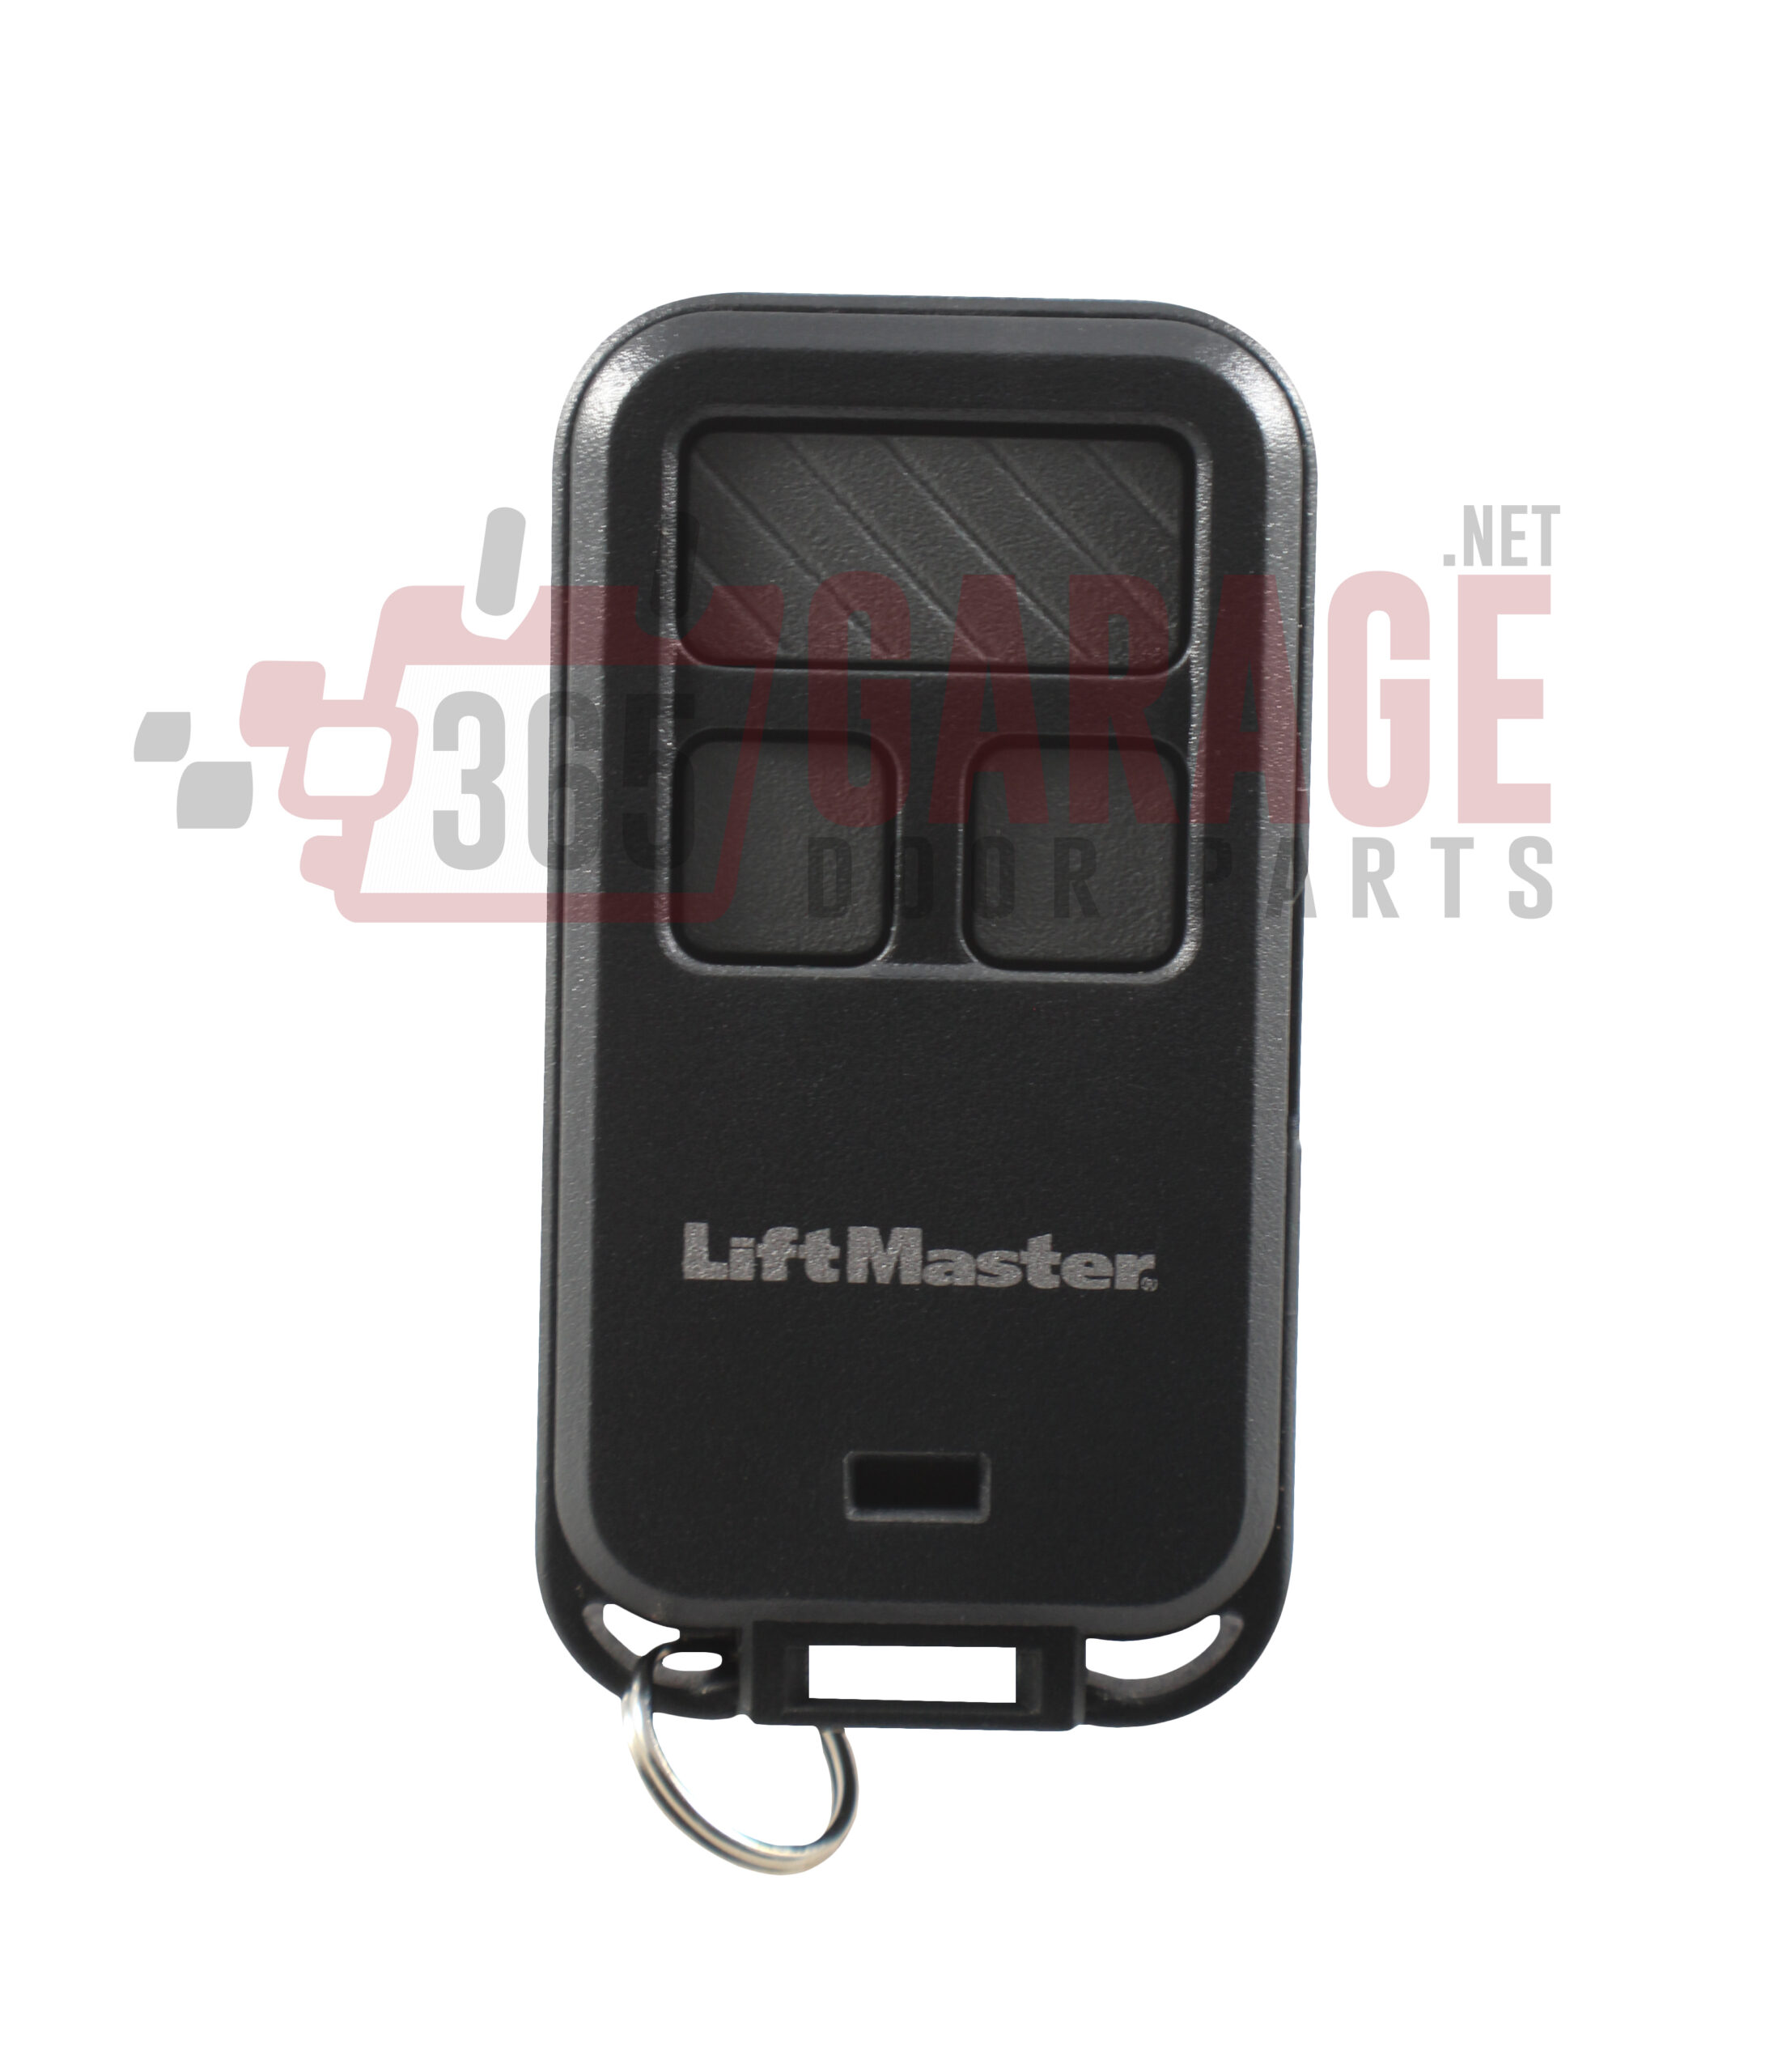 New Liftmaster 890max Mini Key Chain Garage Door Opener Remote 365 Garage Door Parts Professional